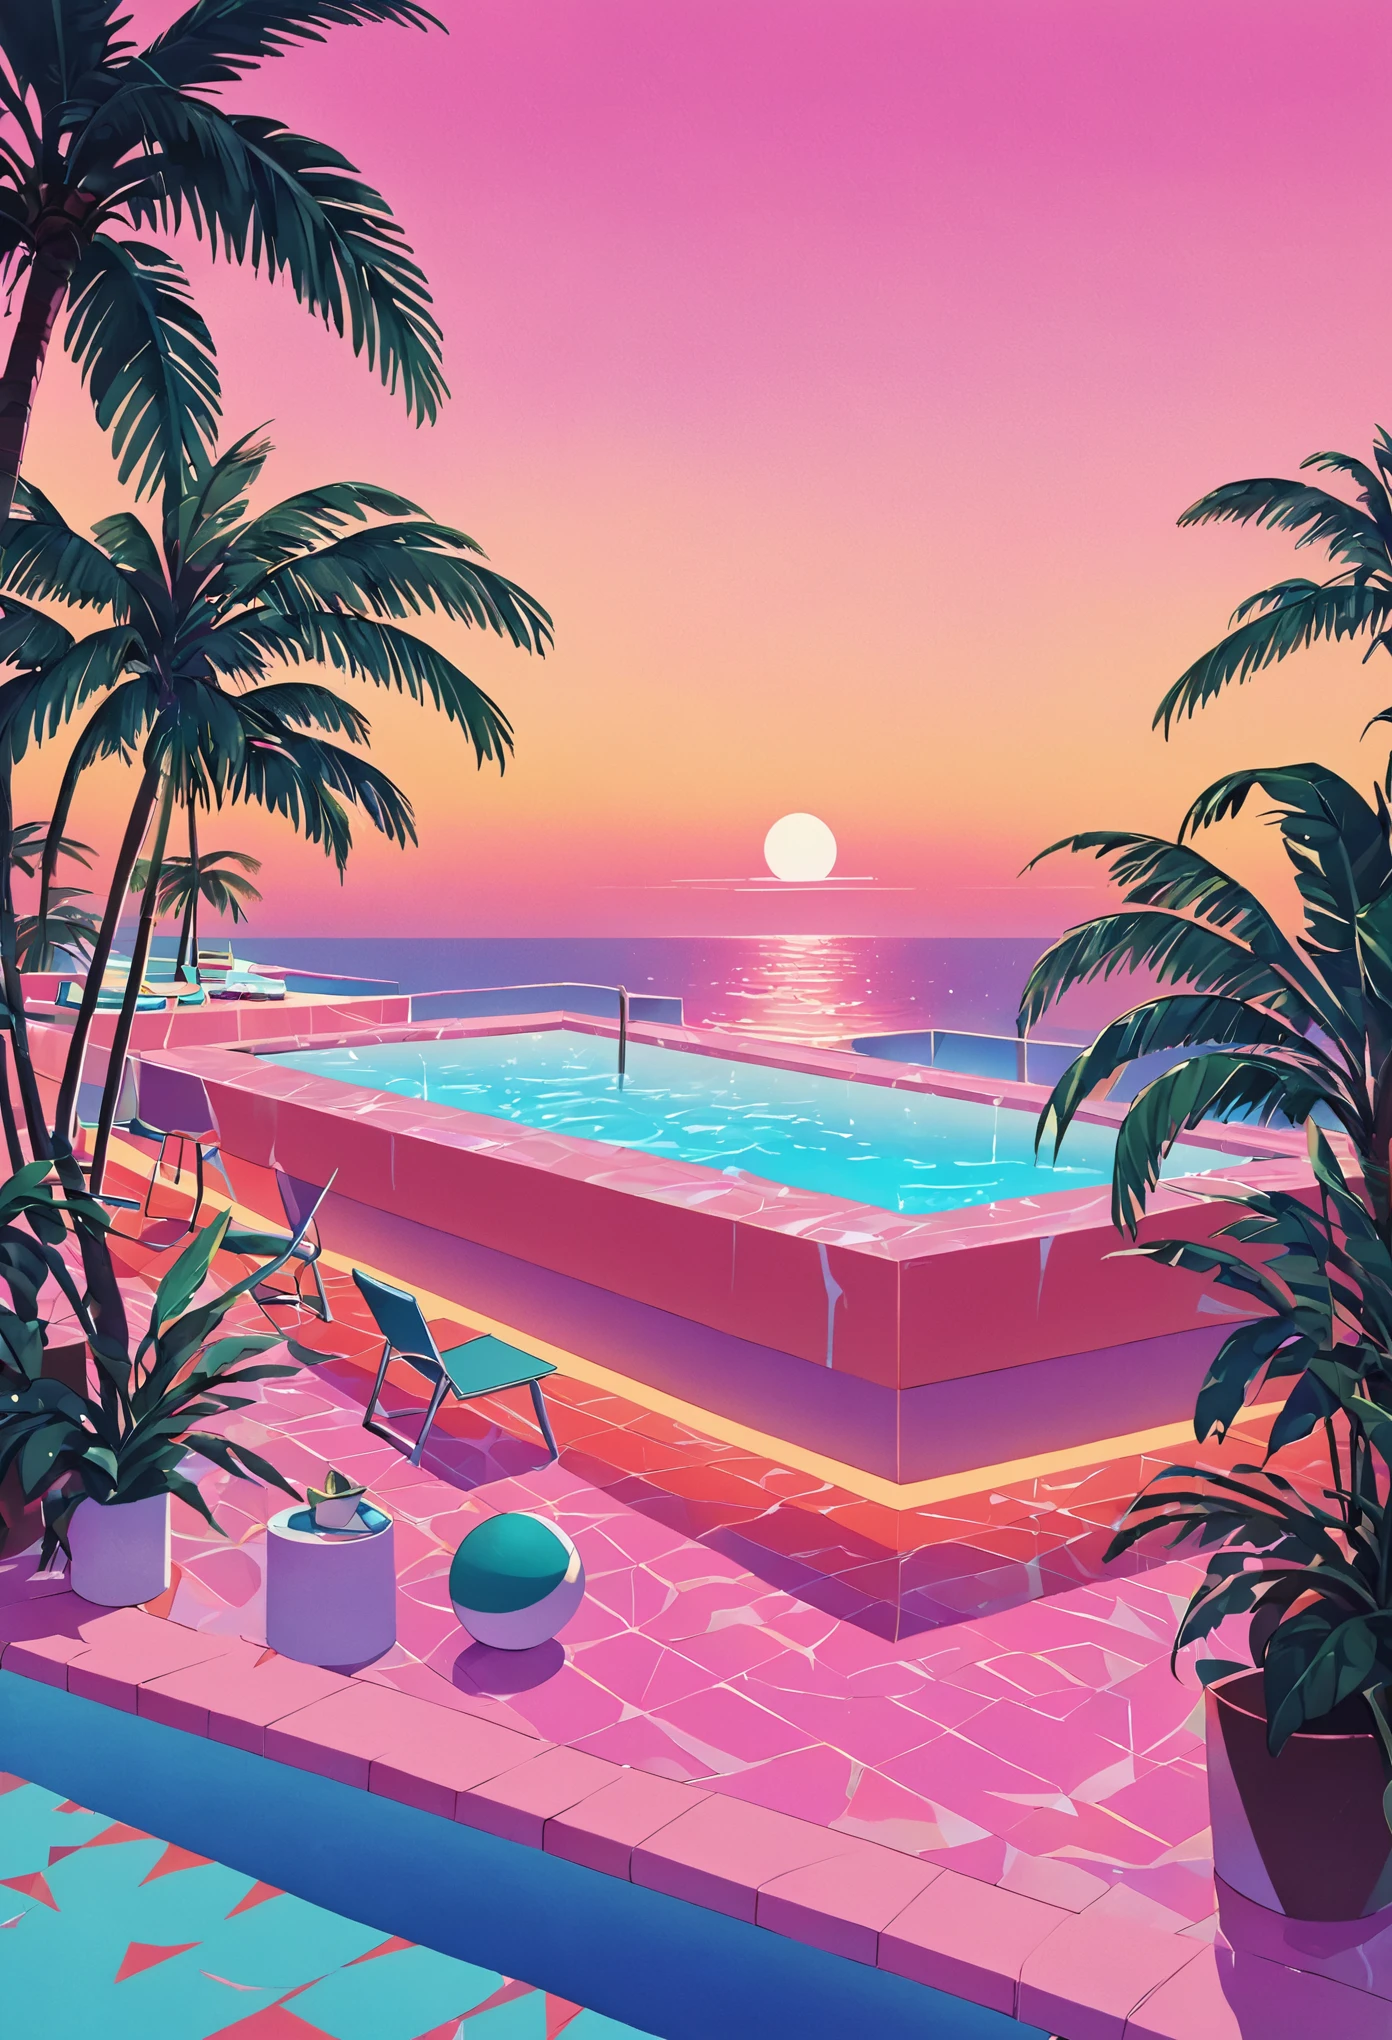 Imaginez une œuvre d’art profondément immergée dans l’esthétique vaporwave des années 80, inspiré du style dynamique de Yoko Honda. Imaginez une scène de piscine et de plage rétro-futuriste au coucher du soleil, où le ciel s&#39;embrase des teintes chaudes d&#39;un coucher de soleil d&#39;été des années 80 : des oranges intenses, roses, et des rouges se reflétant sur les eaux tranquilles de la mer et de la piscine. Autour de la piscine, les palmiers et les cocotiers éclairés au néon se balancent doucement, améliorant l&#39;atmosphère tropicale et surréaliste. Des néons aux motifs géométriques éclairent la scène, jetant une lueur onirique sur tout. L&#39;arrière-plan présente un bar chic en bord de plage avec des intérieurs visibles à travers de grandes fenêtres en verre., présentant une pièce avec des murs et des sols aux couleurs pastel recouverts de luxueuses textures de terrazzo et de marbre. L&#39;ambiance générale allie luxe nostalgique et dynamisme, palettes de couleurs chaudes, créant une scène à la fois intemporelle et nettement évocatrice des années 80.